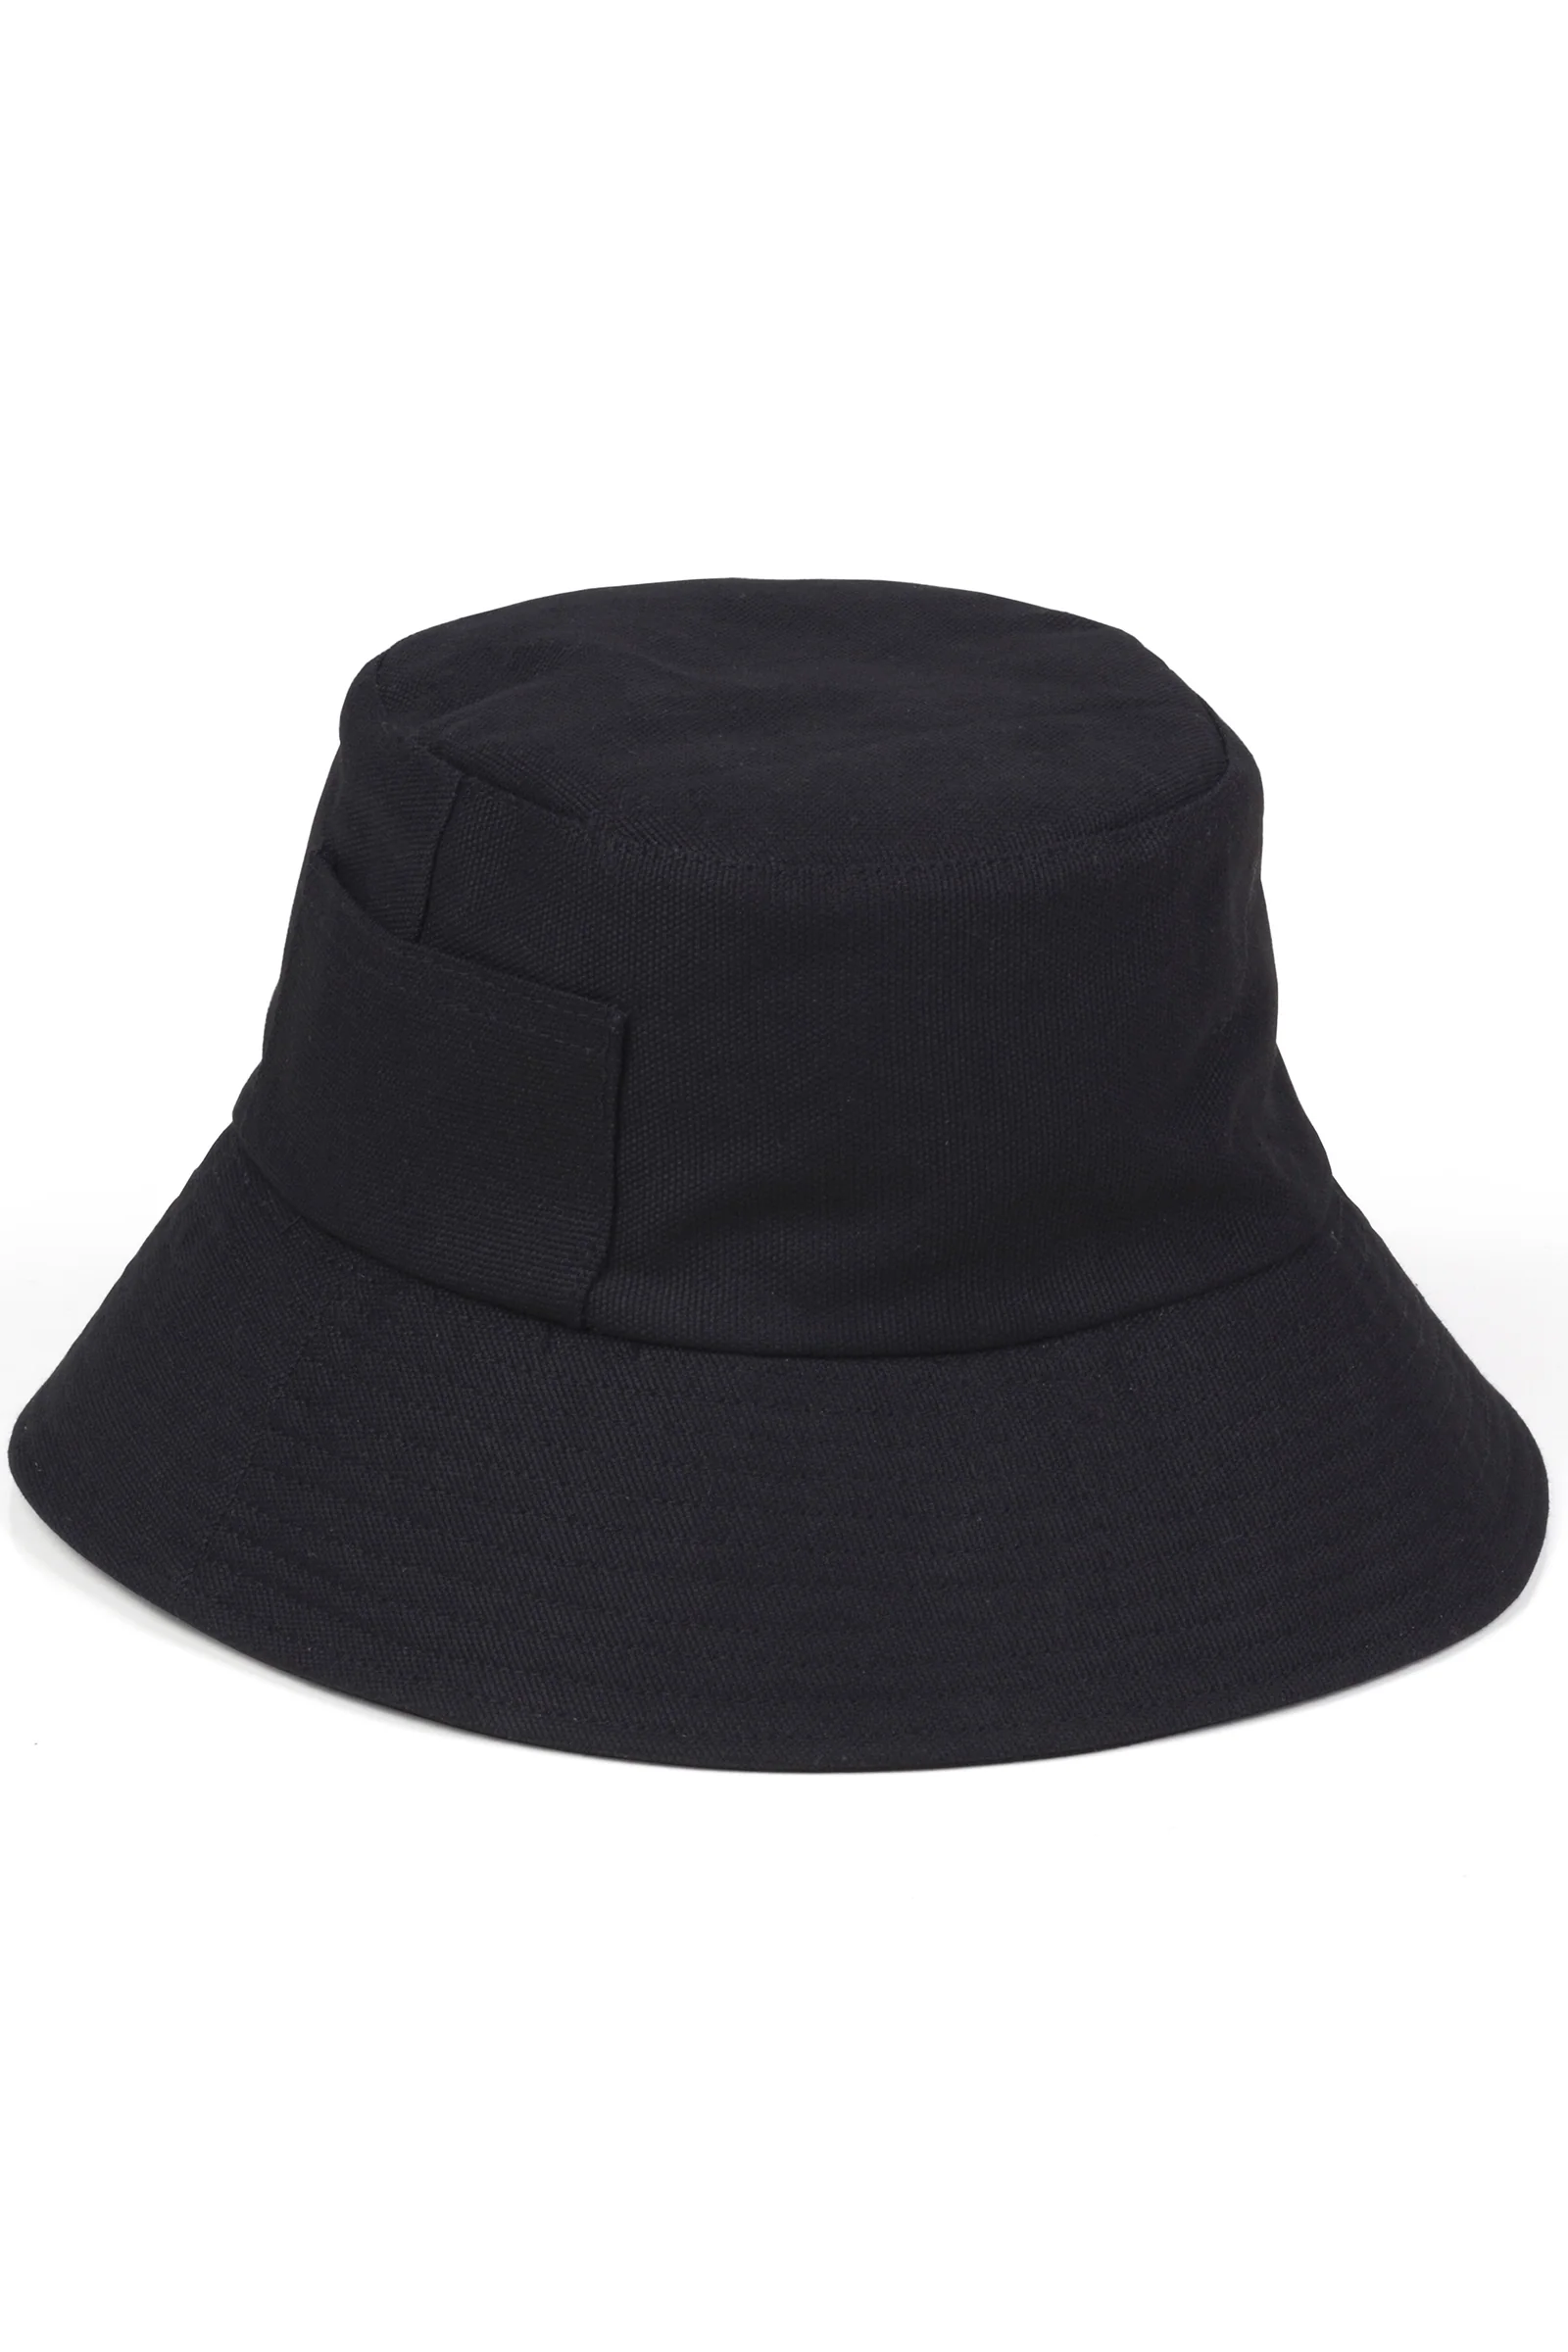 Wave Canvas Bucket Hat - Black